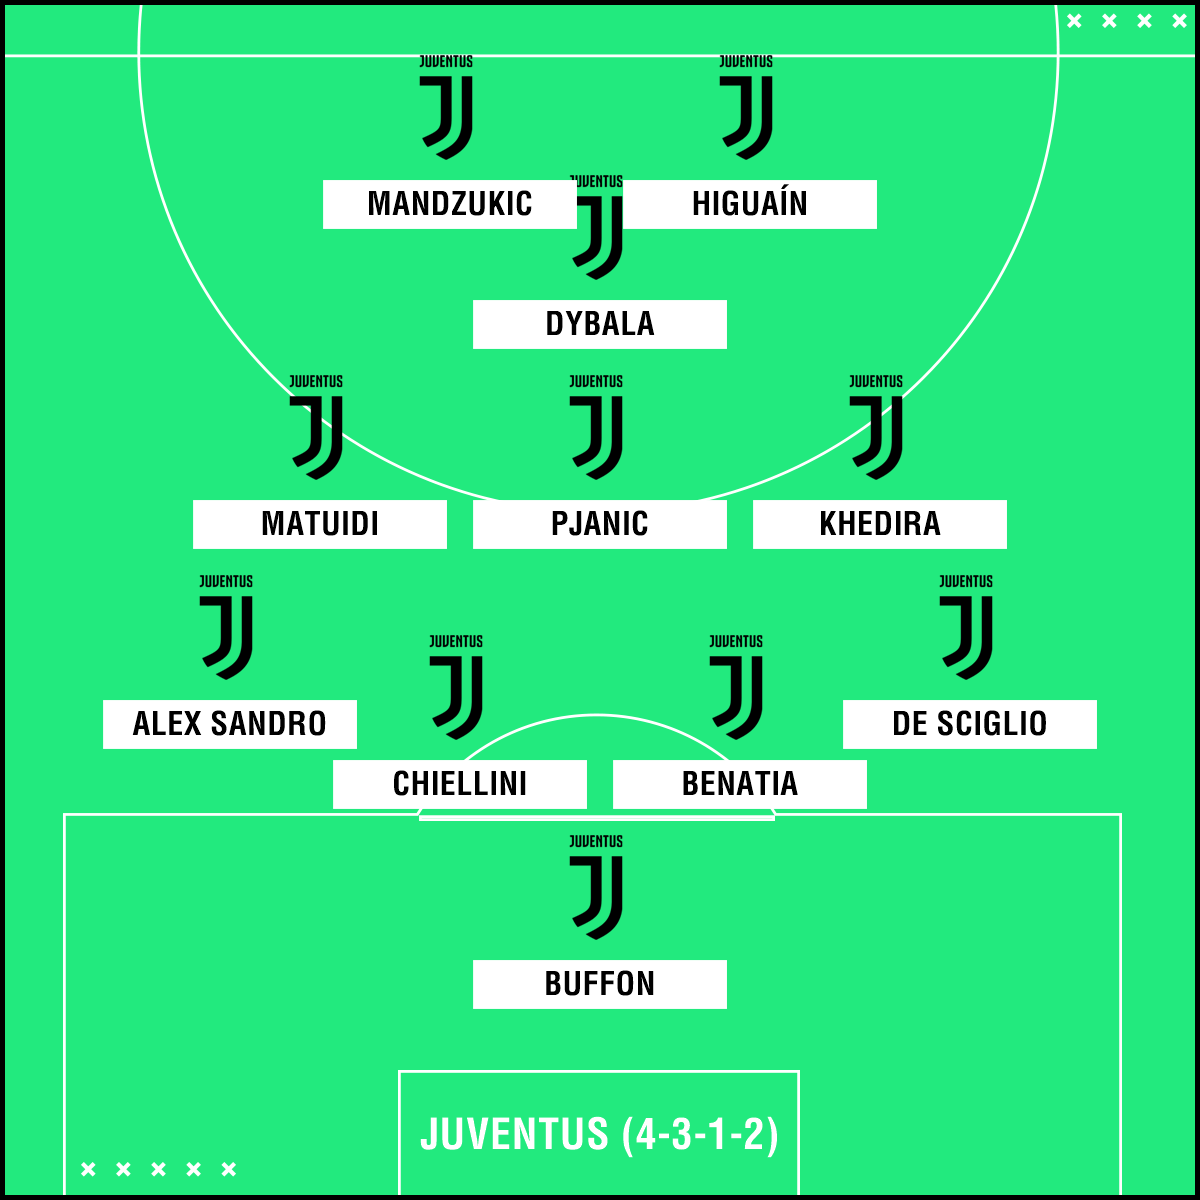 Juventus XI